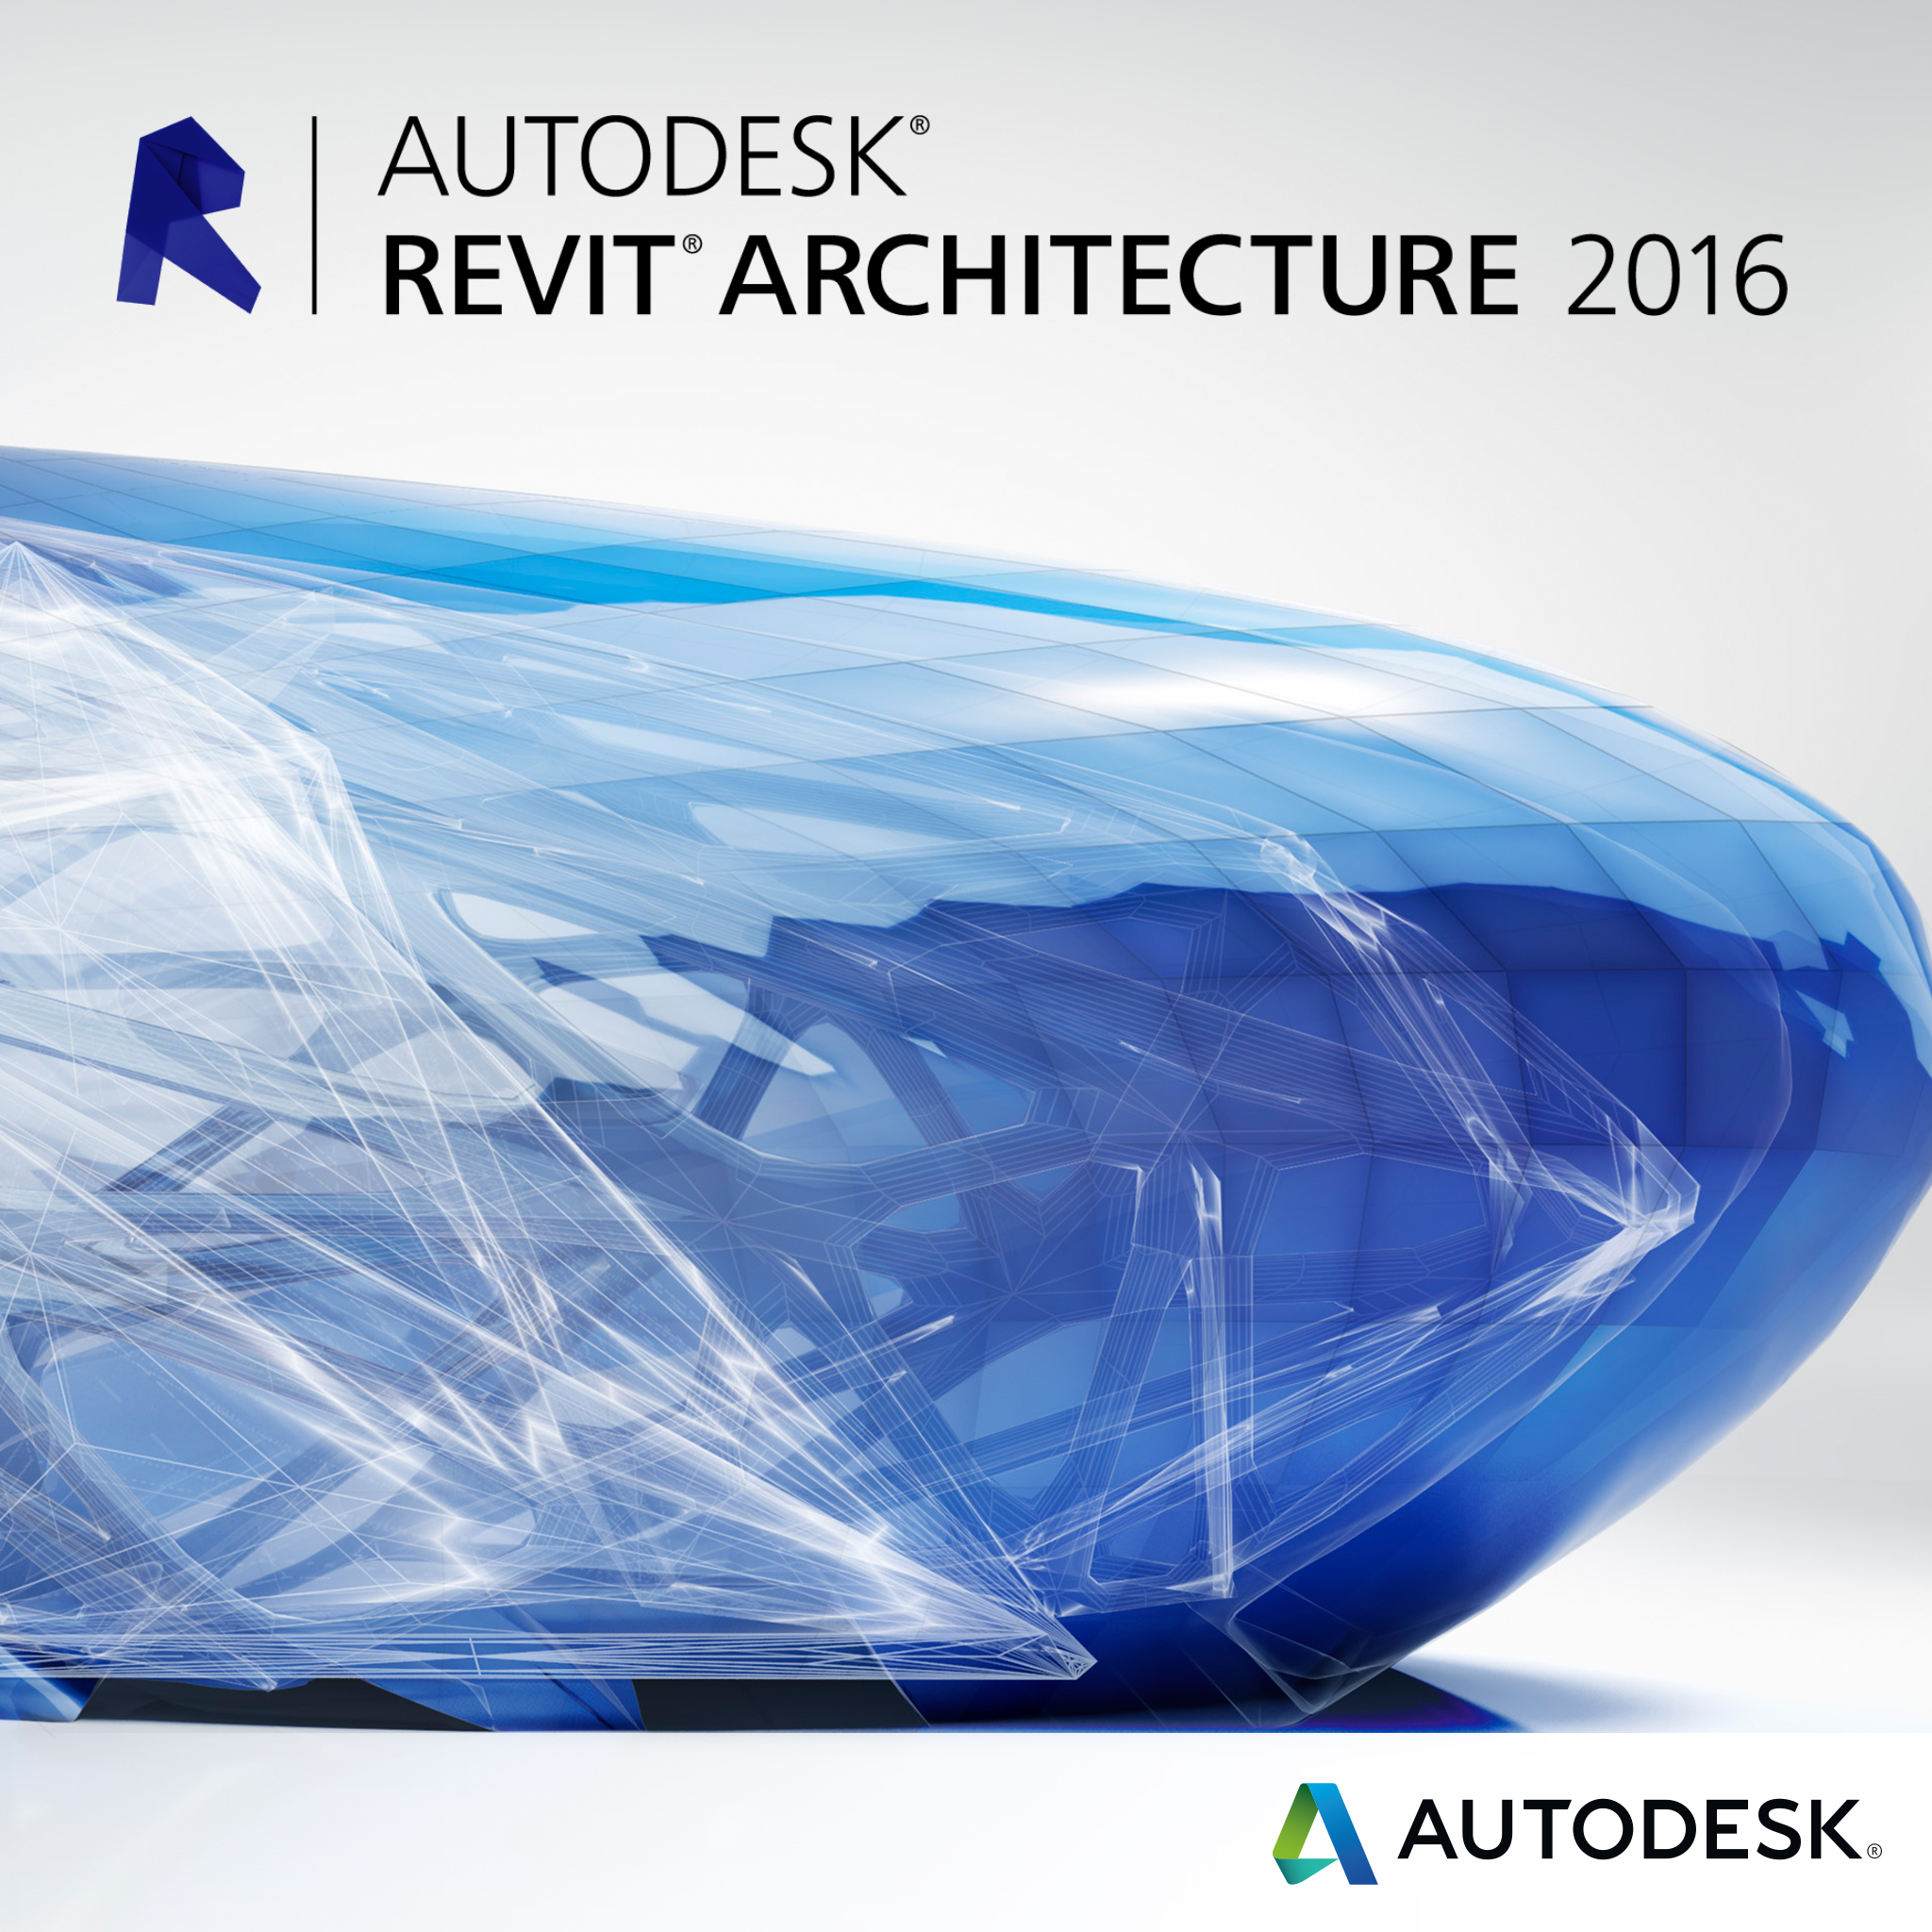 autodesk revit architecture 2016 download